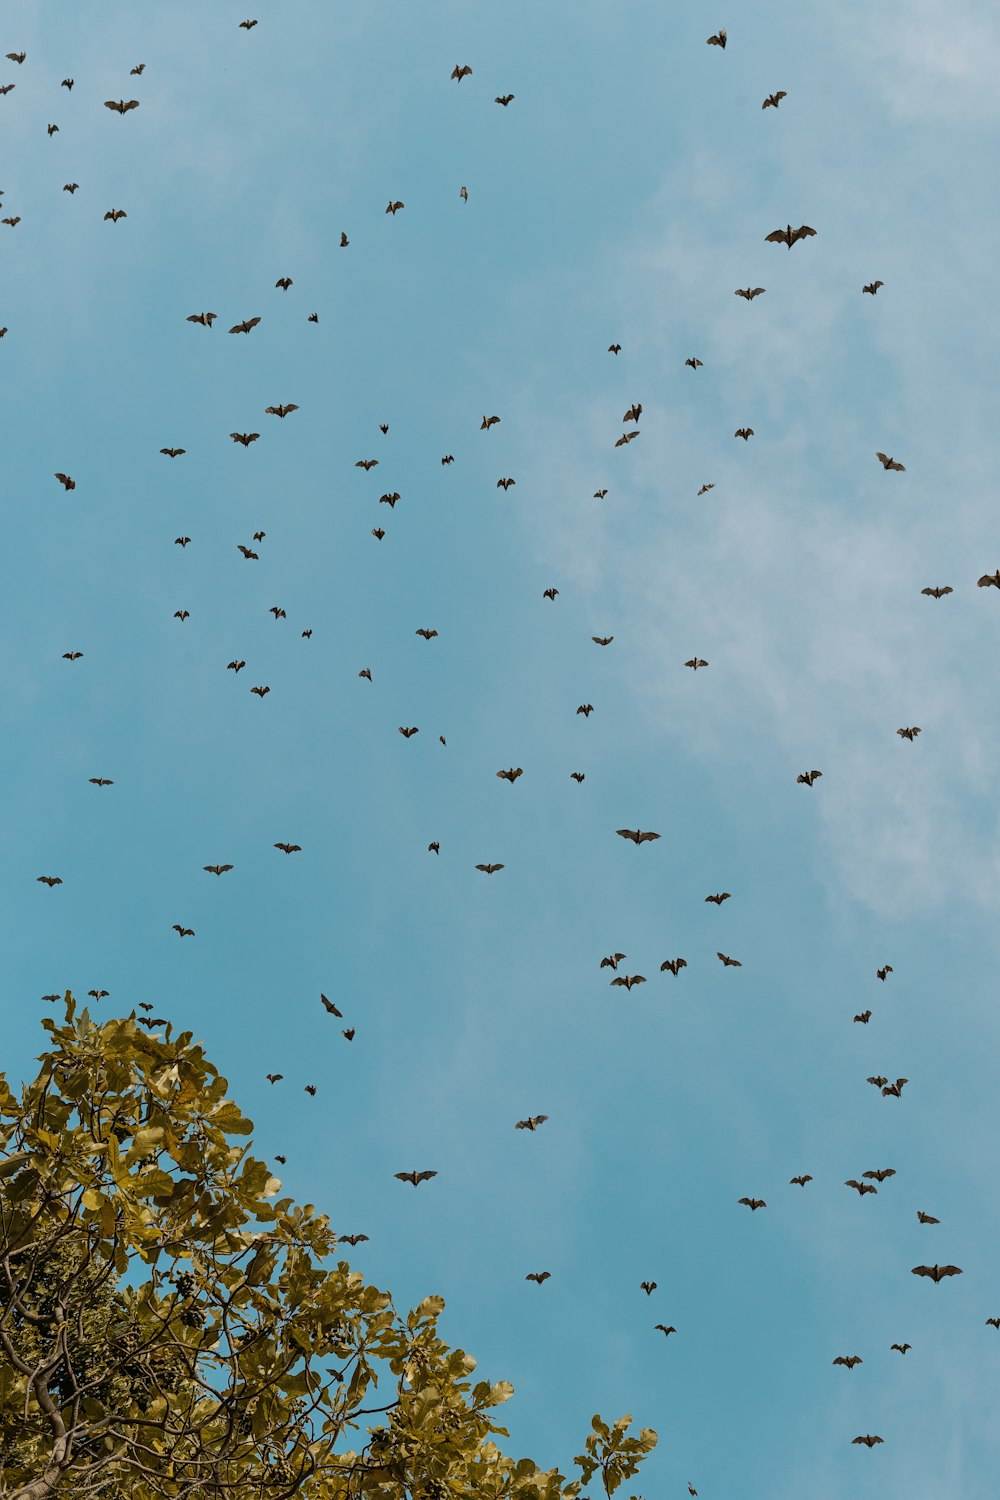 bando de pássaros voando sob o céu azul